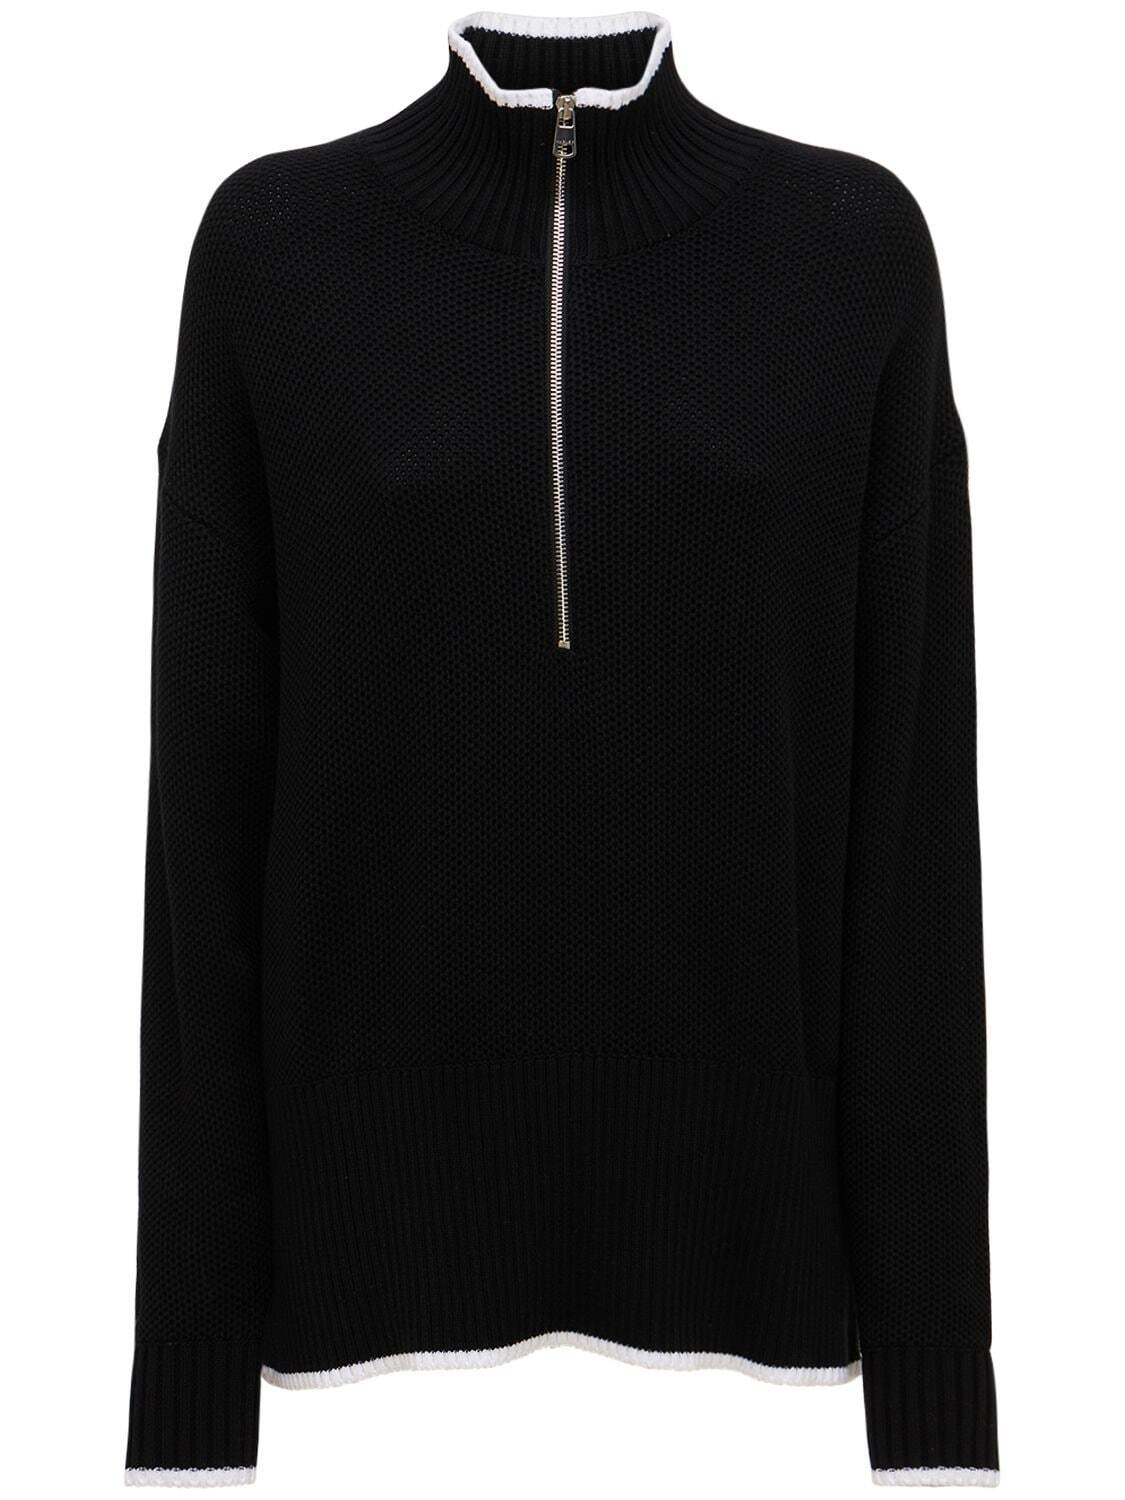 VARLEY Cooper Half-zip Sweatshirt in black